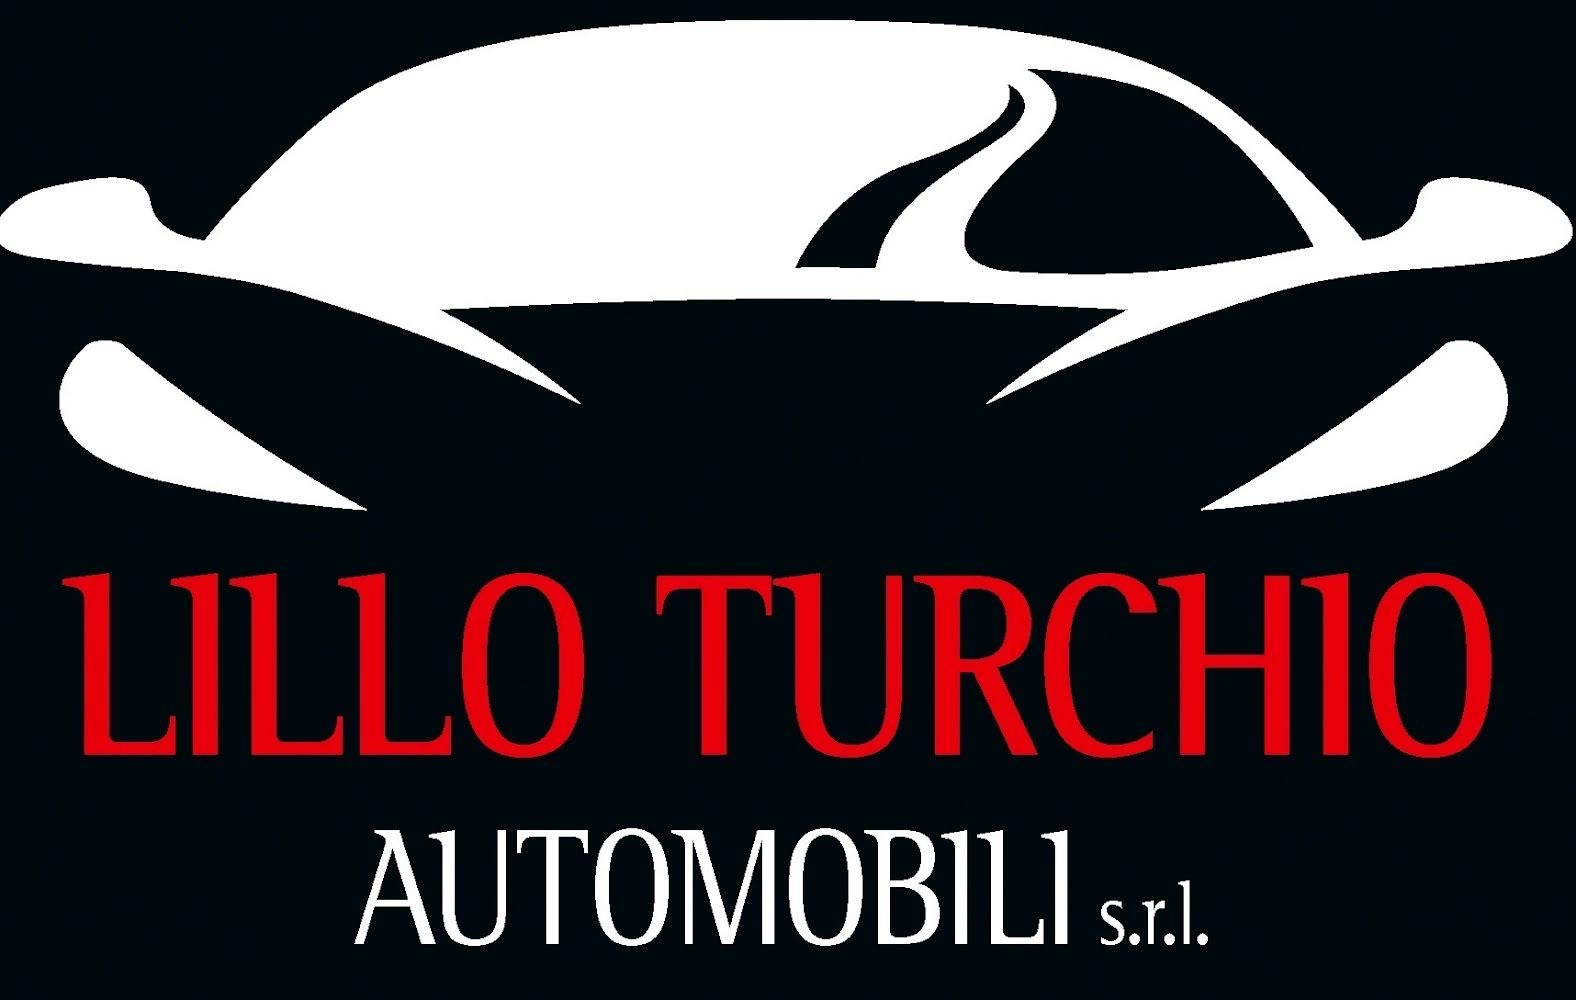 Lillo Turchio Automobili